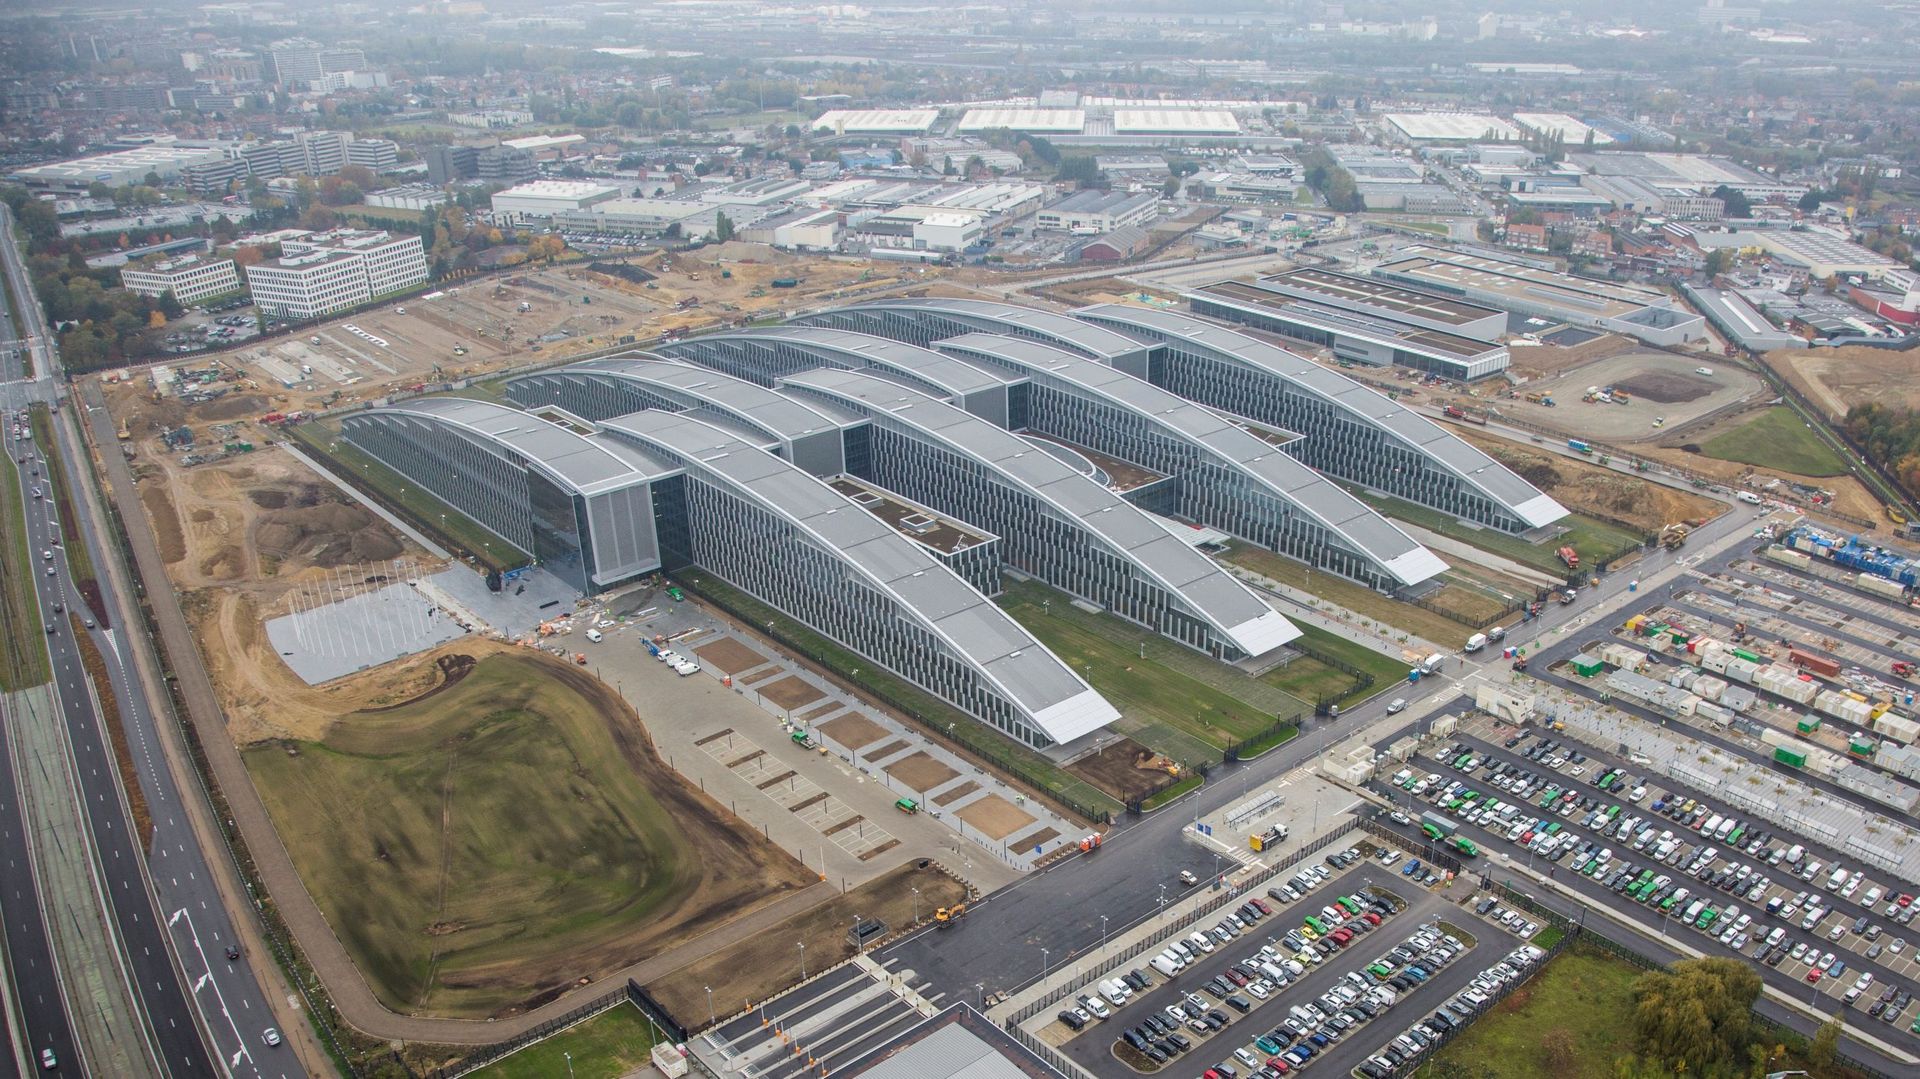 Le nouveau siège bruxellois de l'Otan inauguré en 2016.